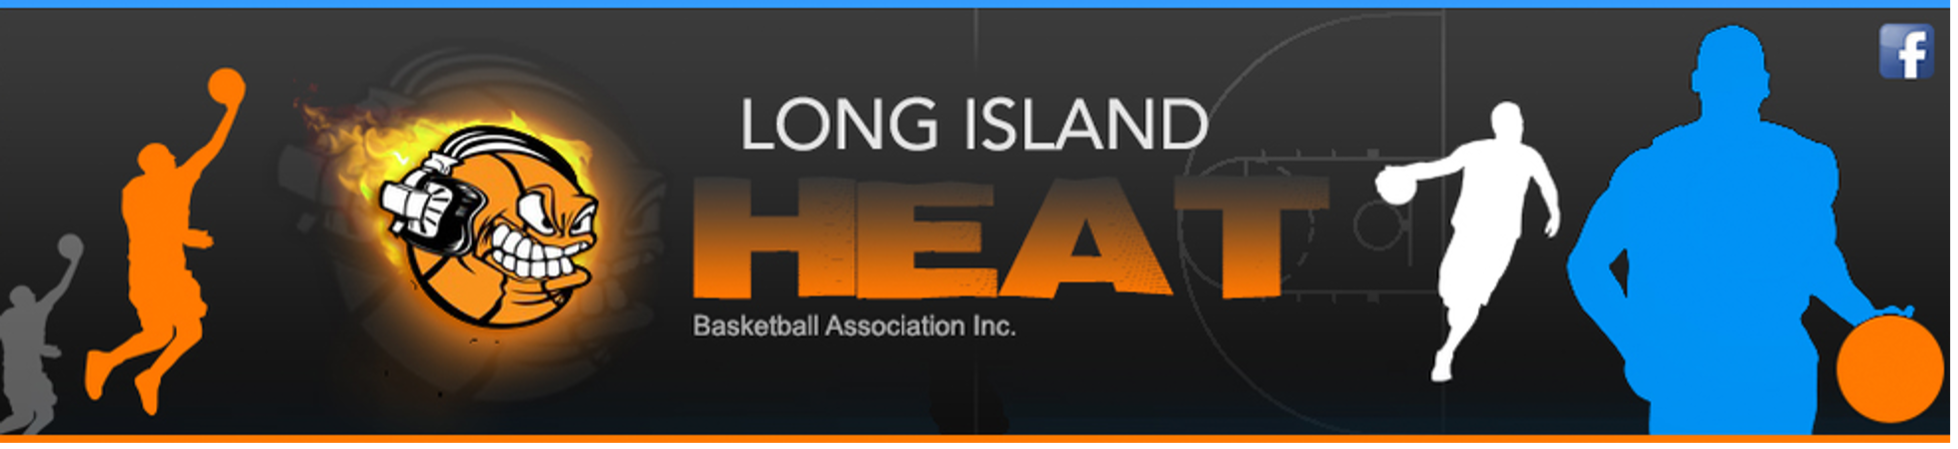 Long Island Heat Basketball Association